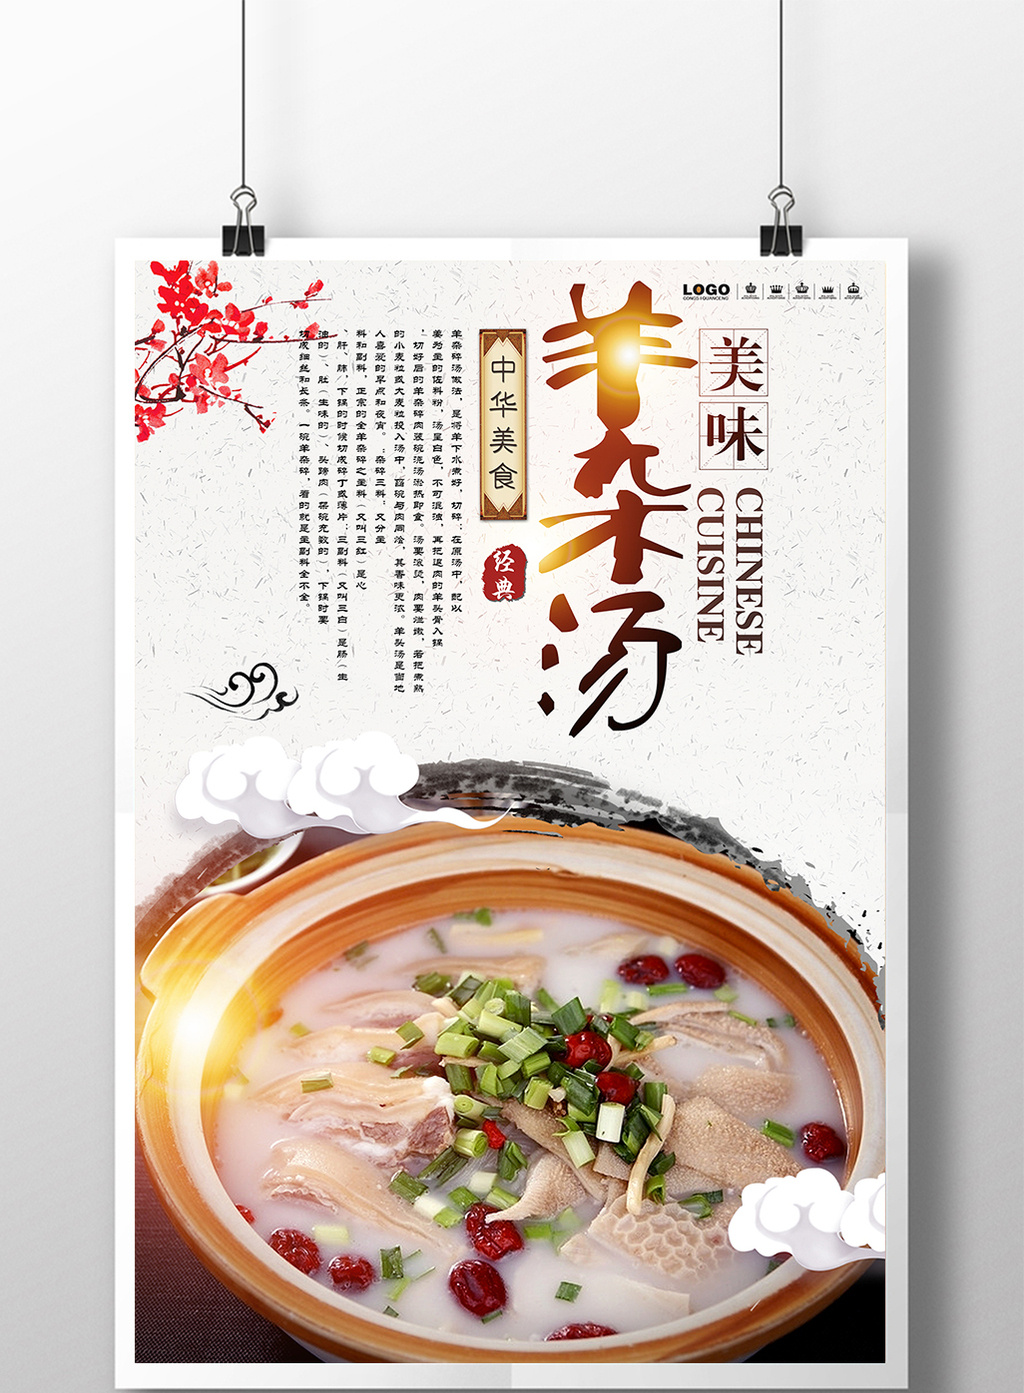 好看的羊杂汤美食餐饮海报设计素材免费下载,本次作品主题是广告设计